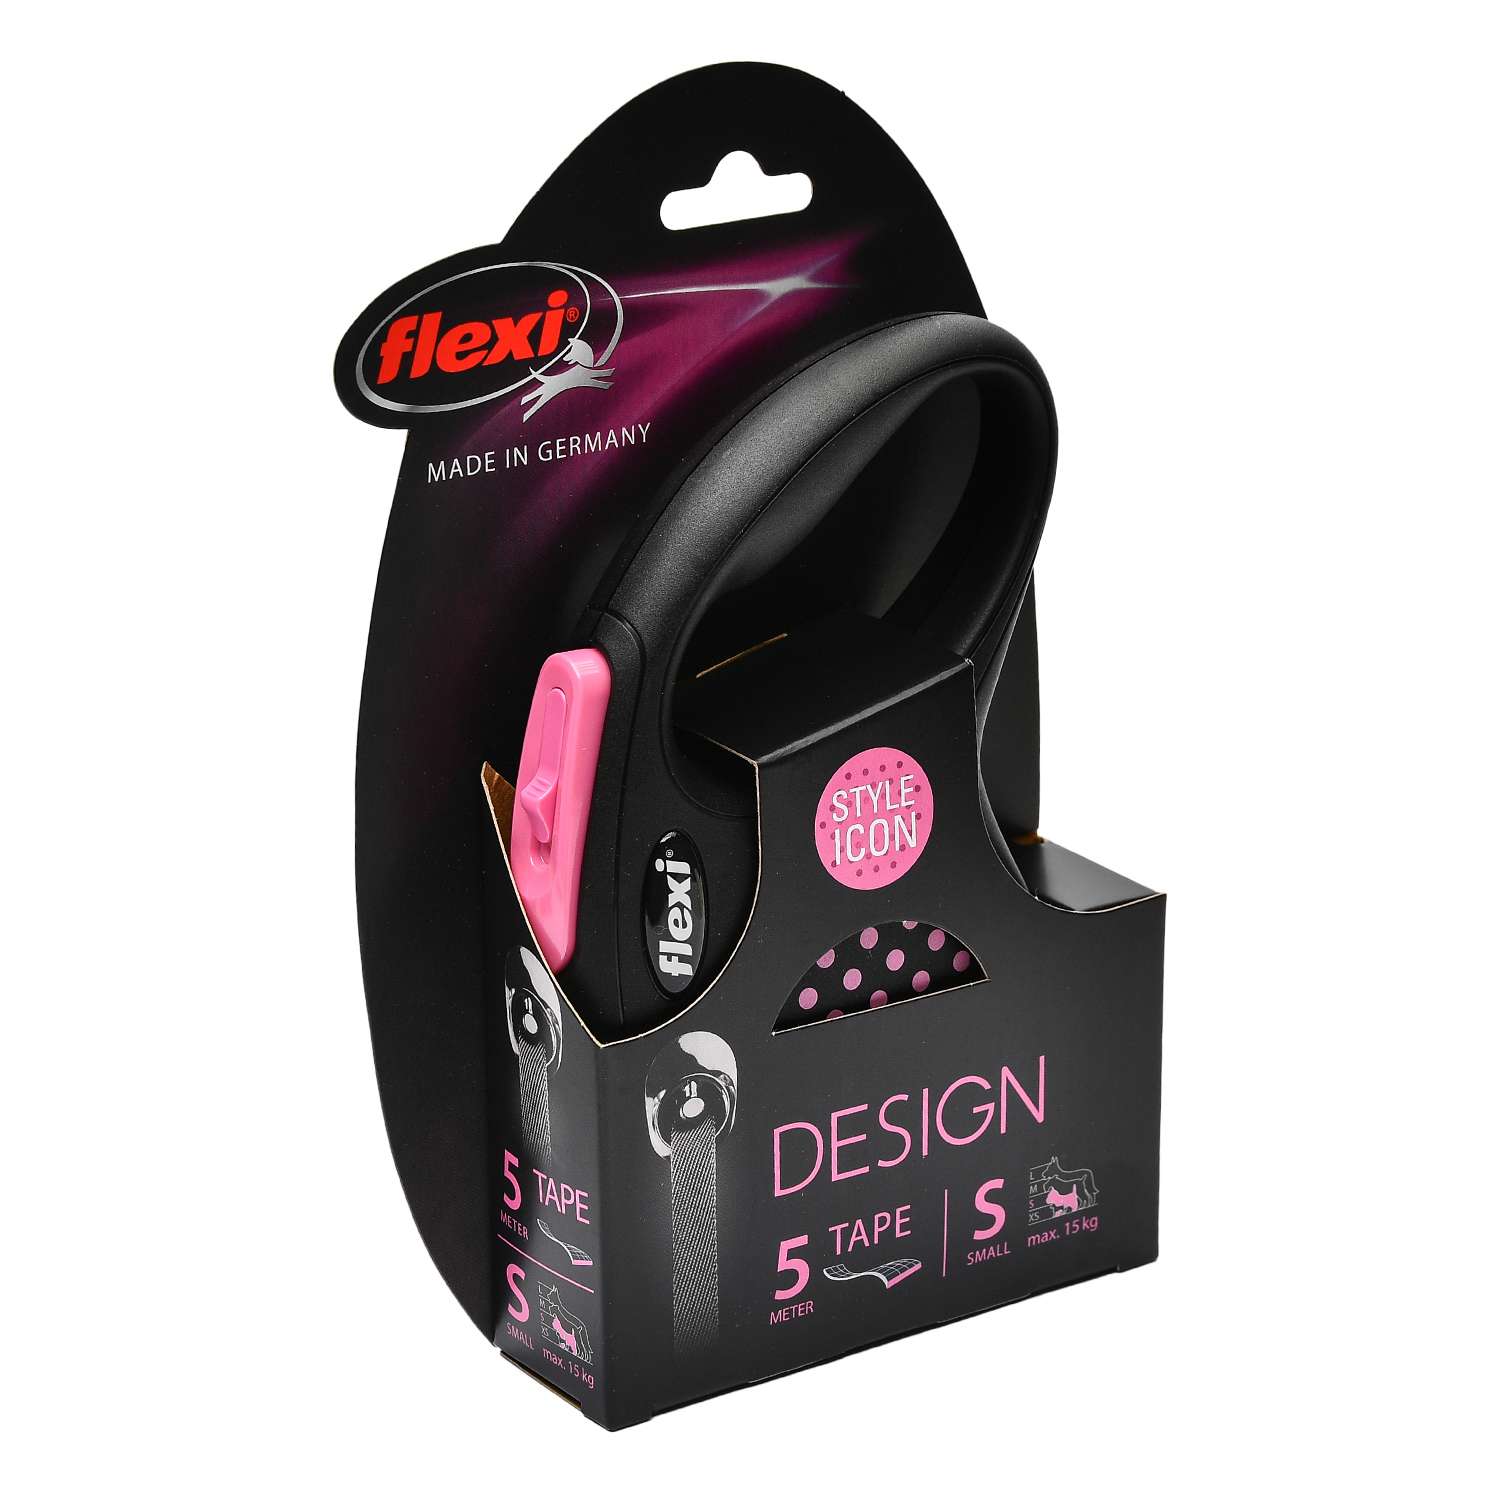 Рулетка Flexi Design S лента 5м до 15кг Черная-Розовый горох - фото 2